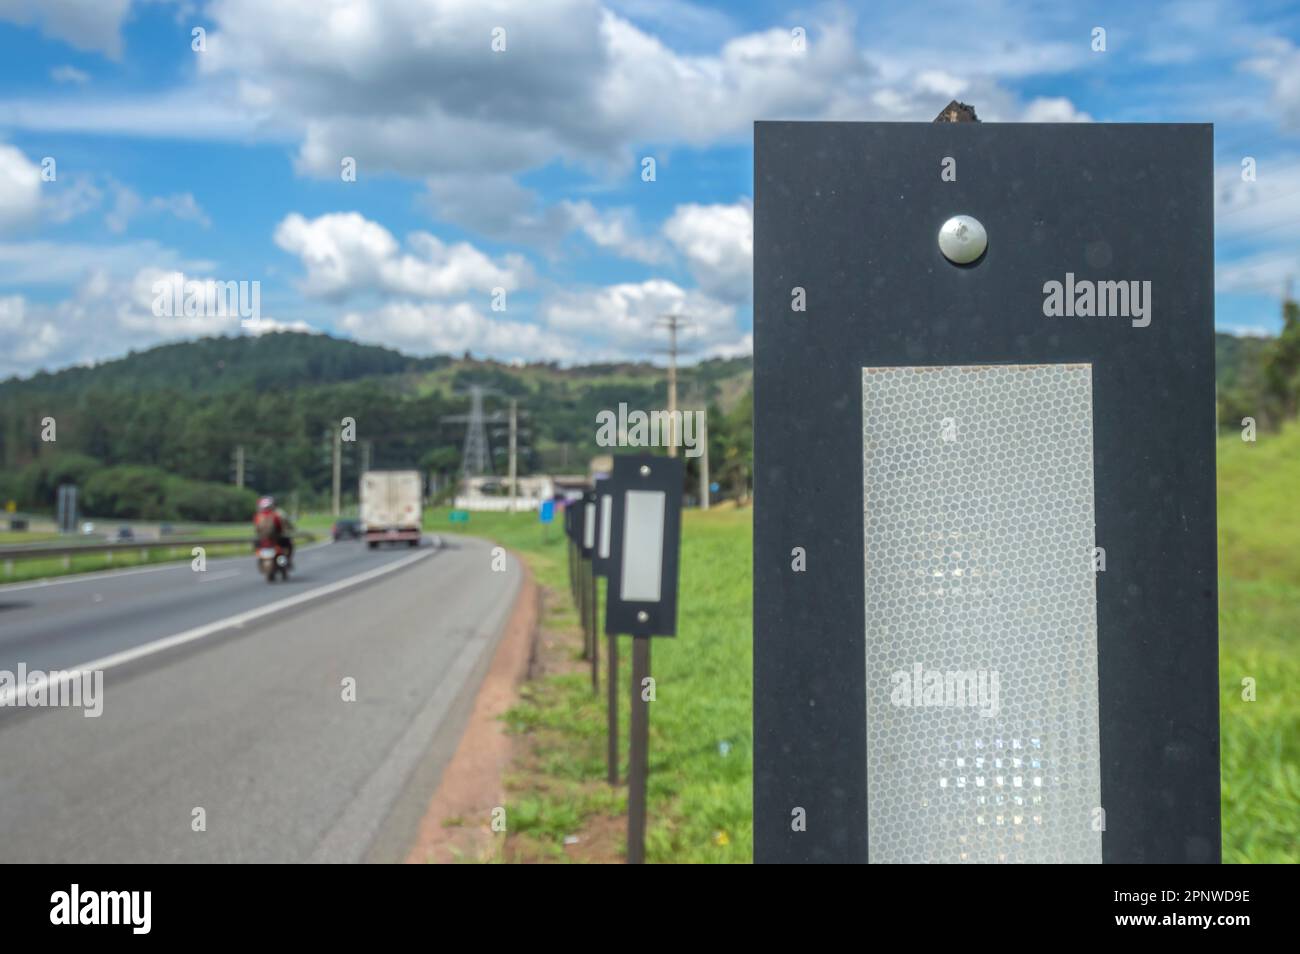 Itatiba-sp, brasilien-April 19,2023 Reflektorlicht auf der Autobahn hielt die Fahrer durch Signalisierung und Reflektion von Licht in der Nacht in Position. Stockfoto